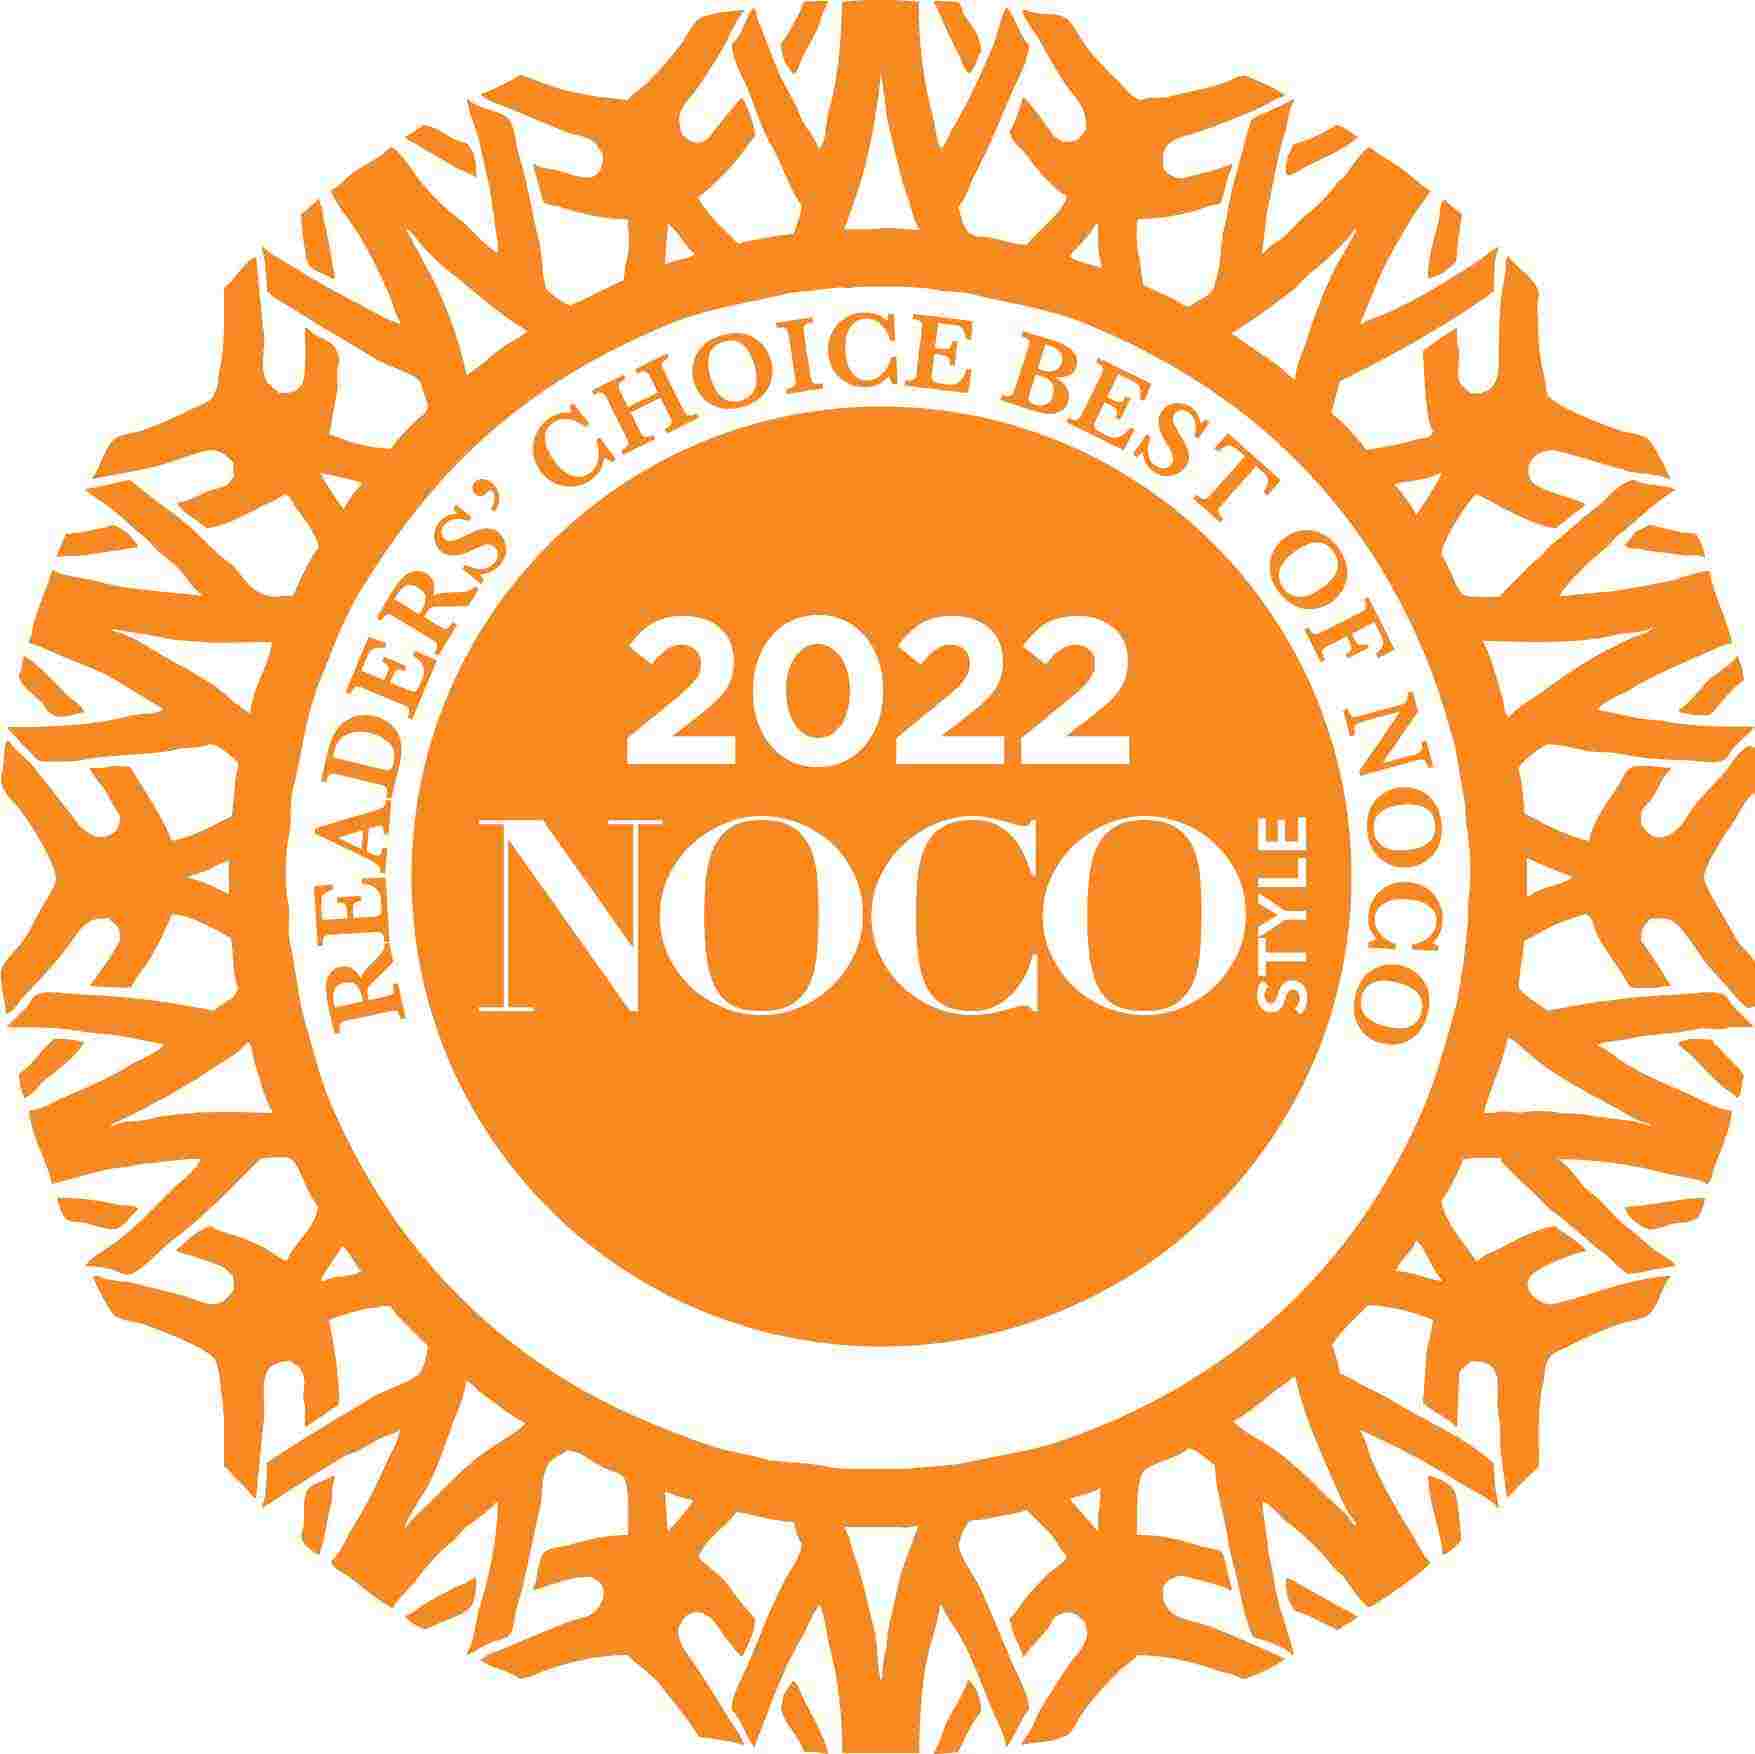 NOCO 2022 award